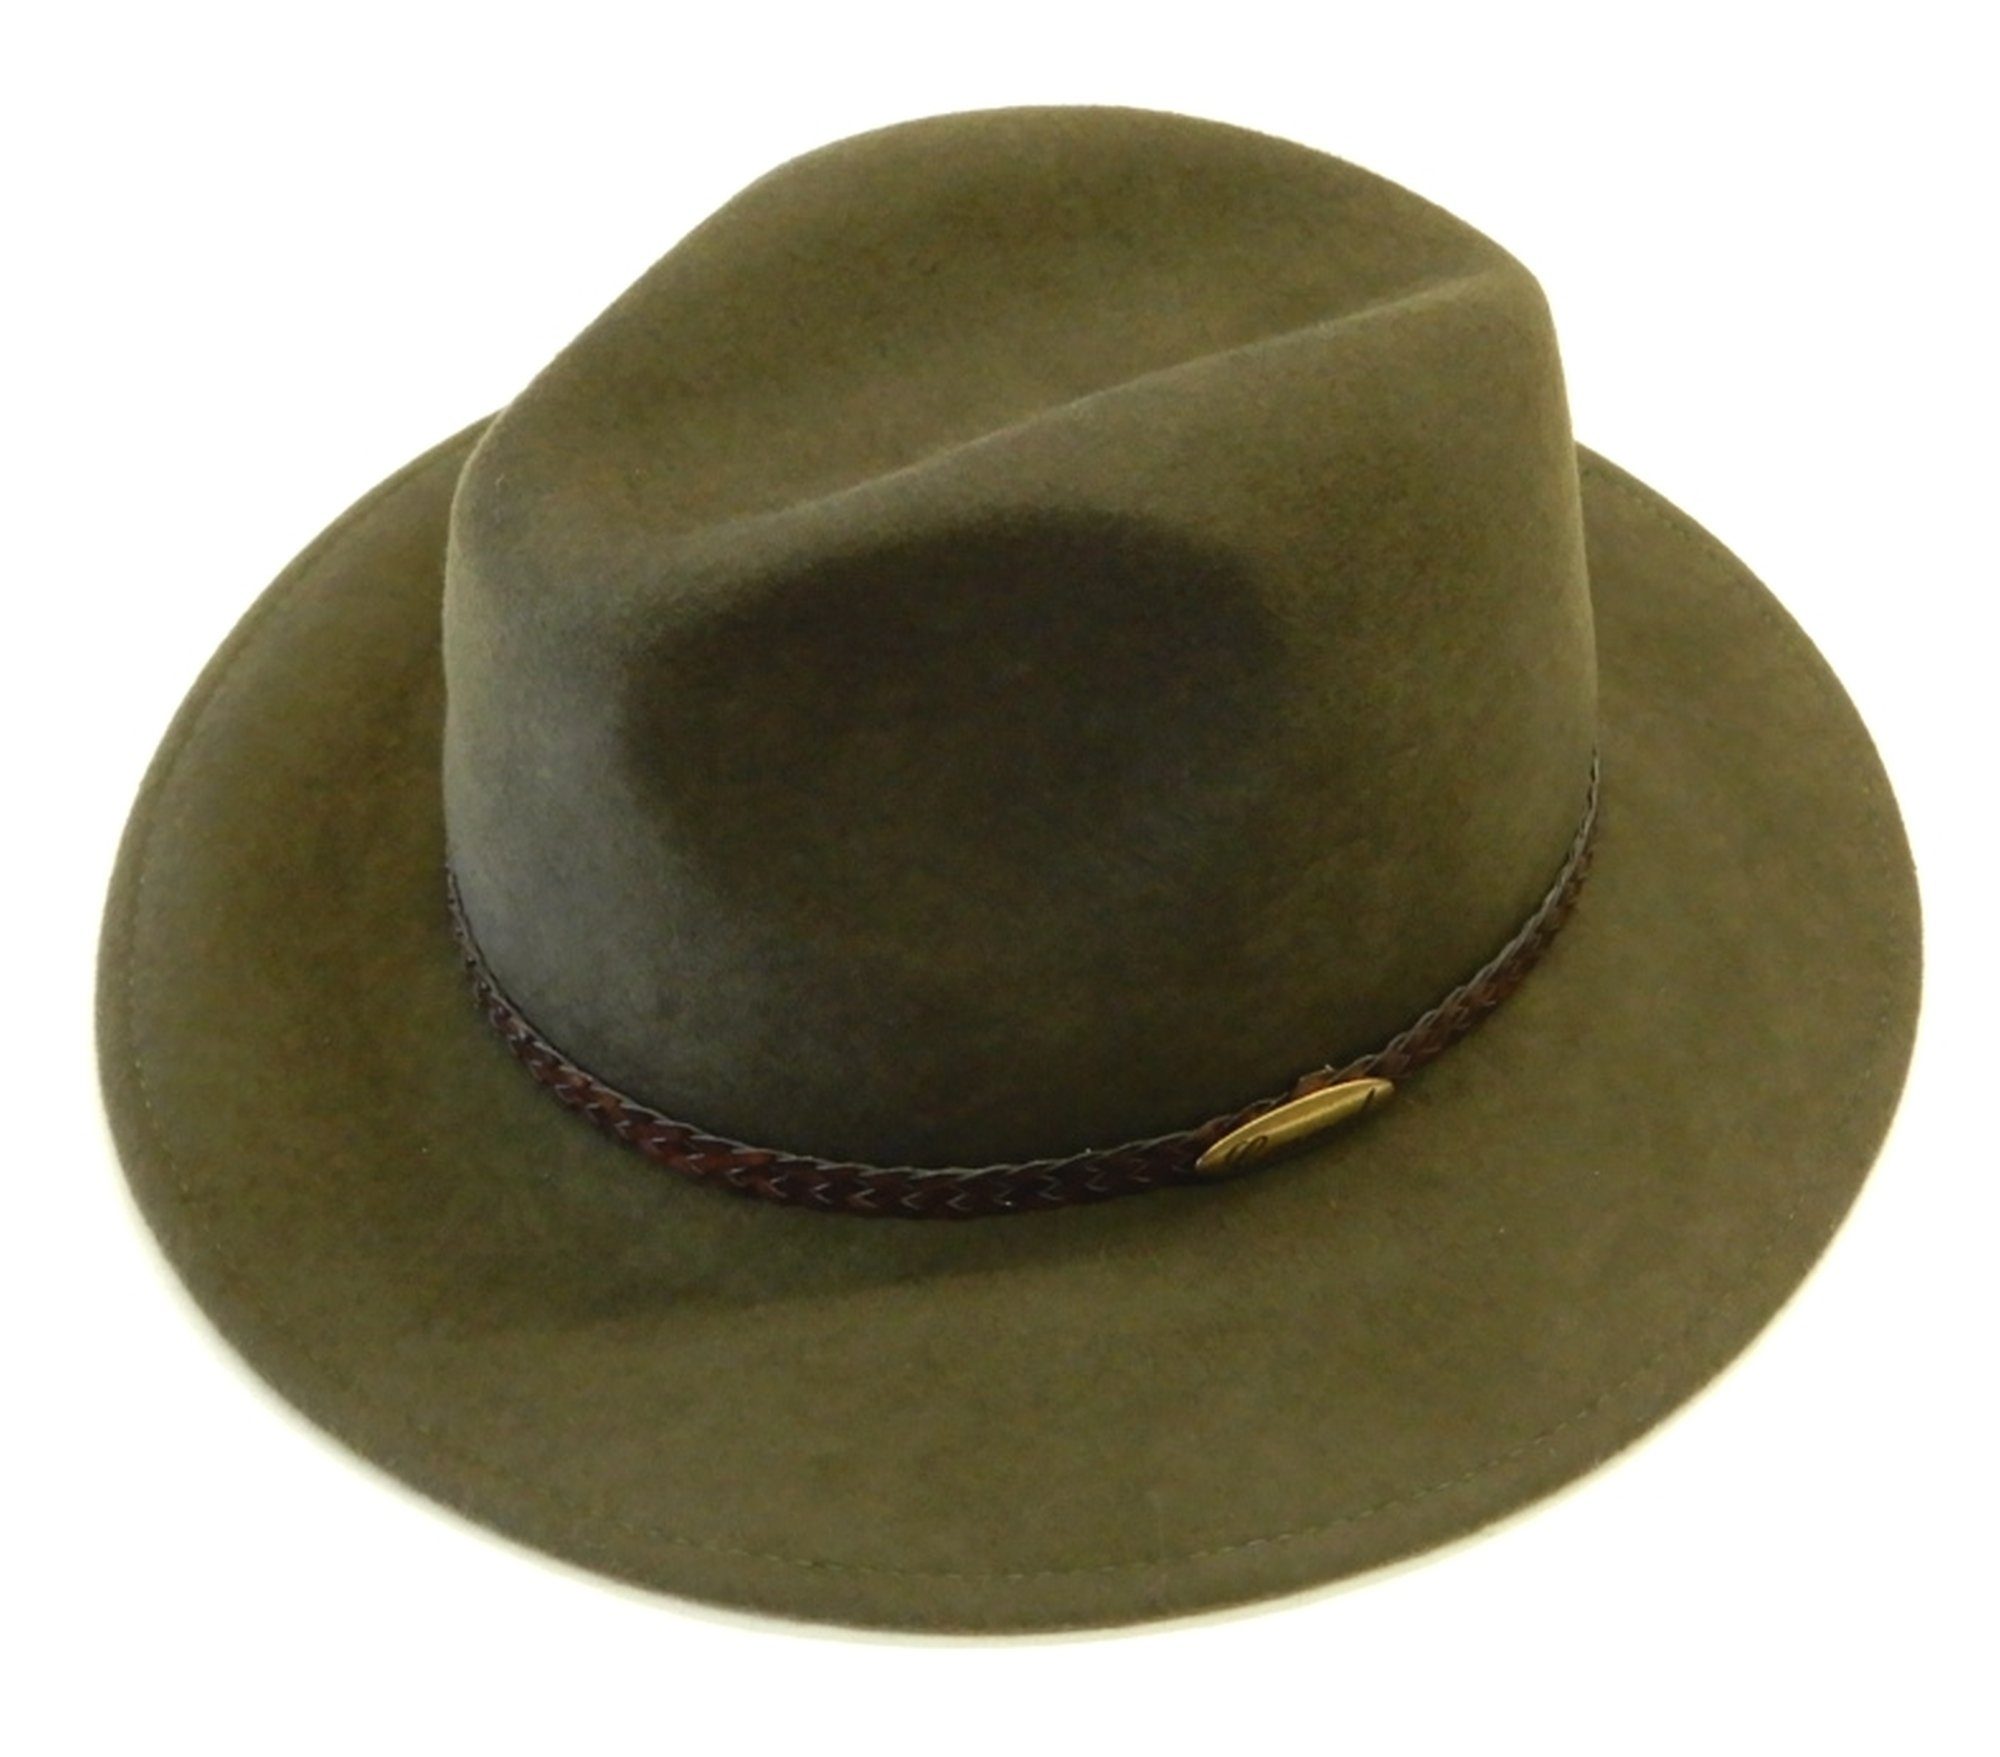 Verkauf Chaplino Outdoorhut olivgrün mit geflochtenem Hutband